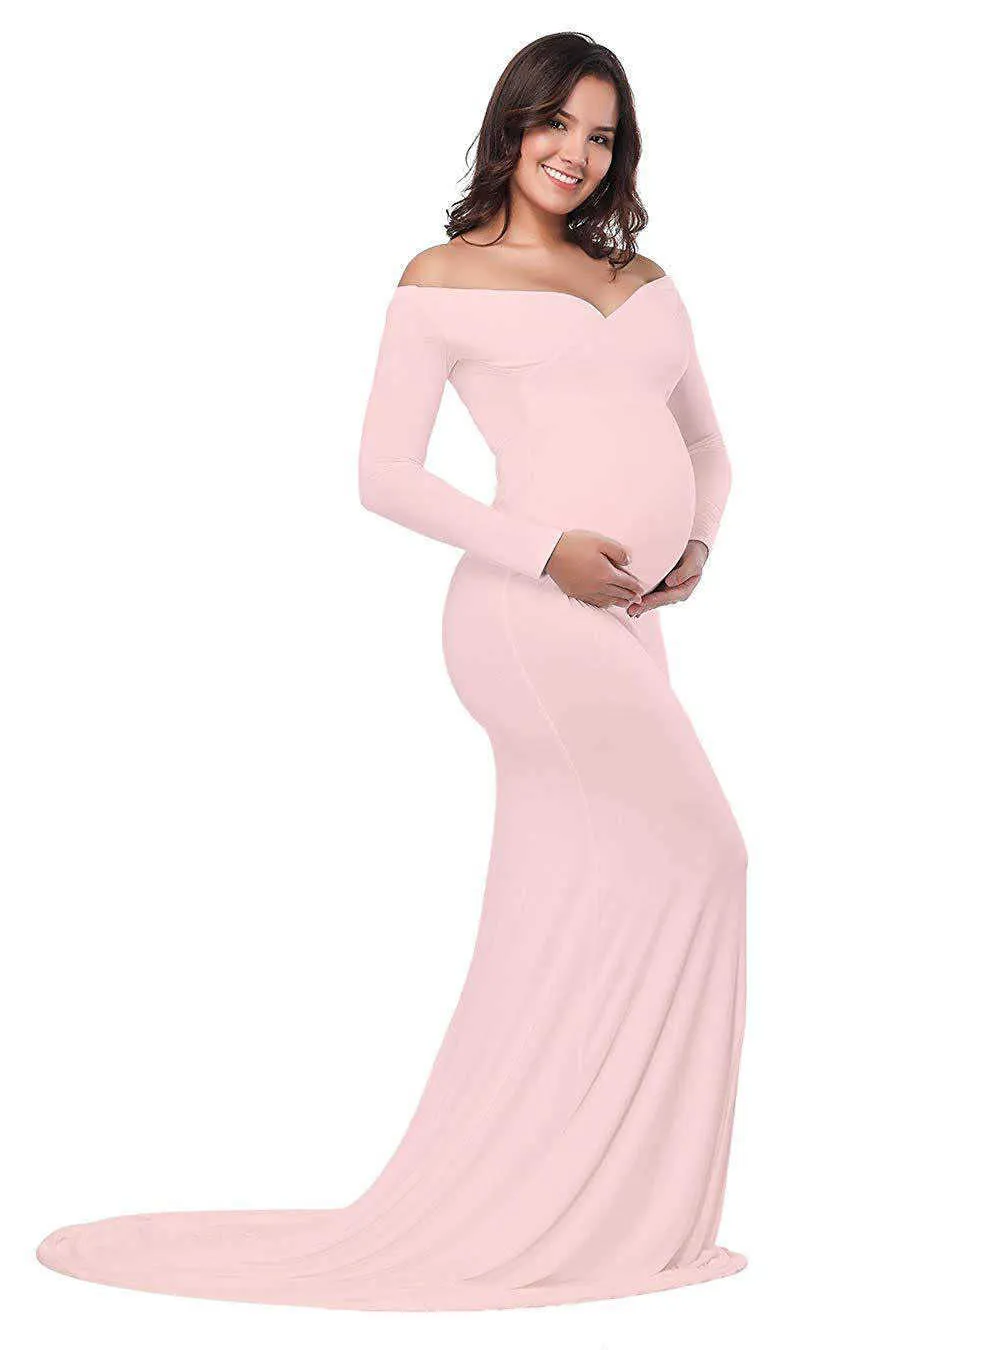 Podchodząca sukienka dla kombinezonu damska bawełniana bawełniana w ciąży sukienka fotograficzna m001